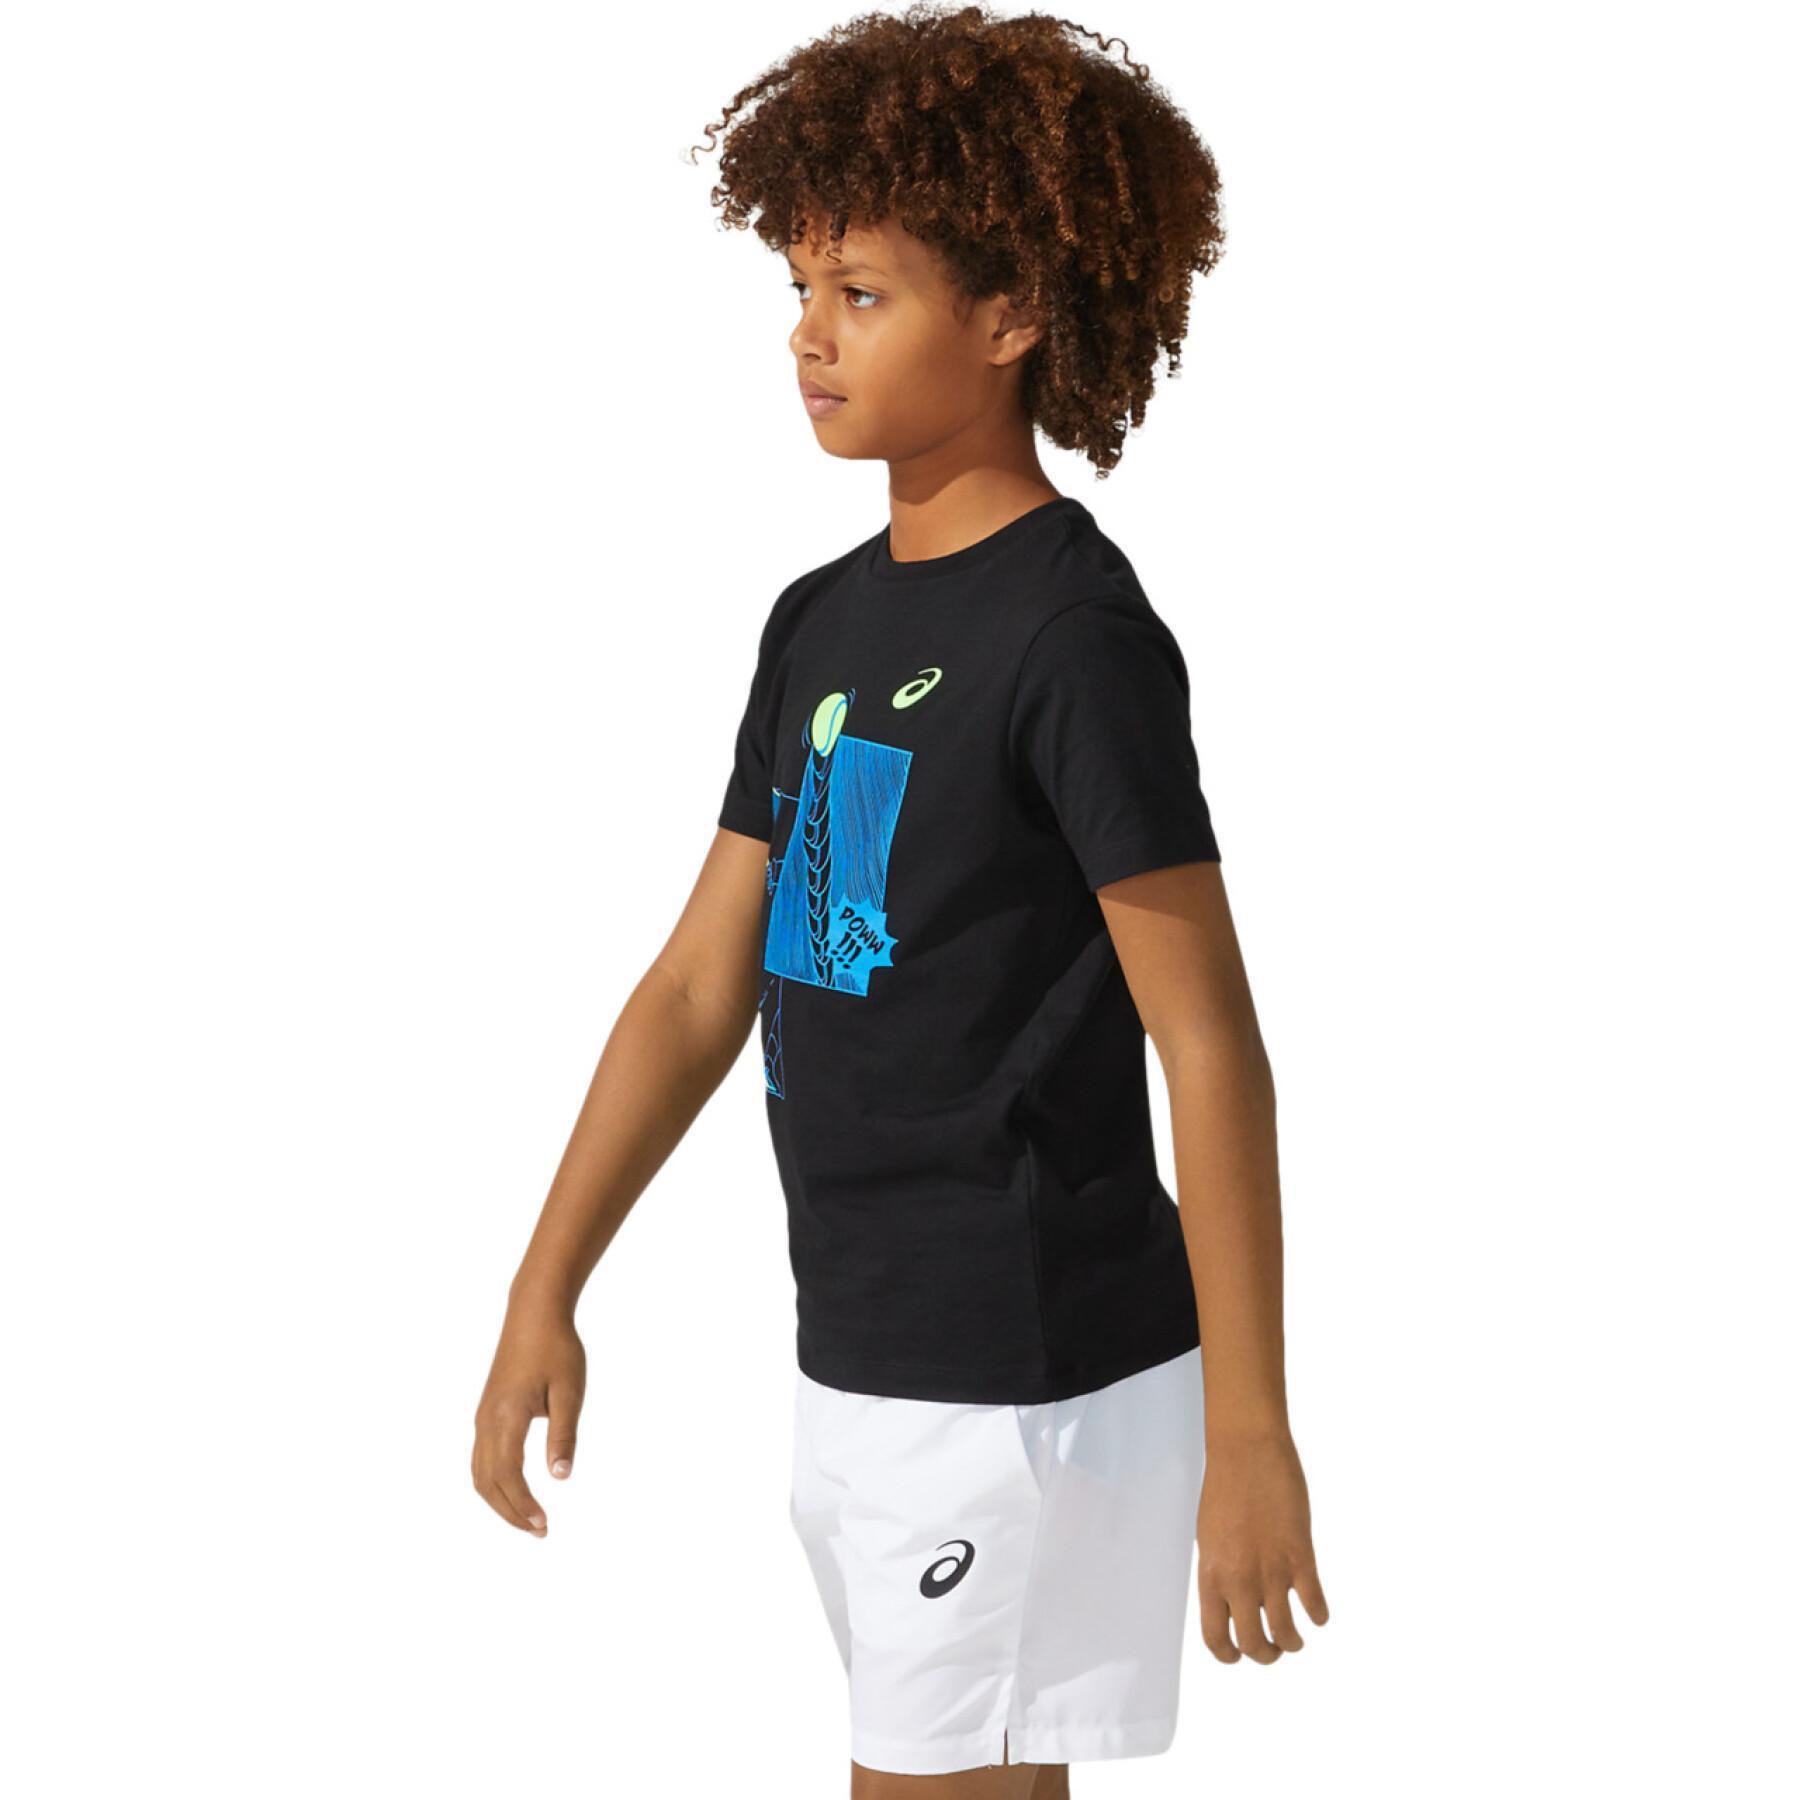 Koszulka Asics T-Shirt enfant B Tennis